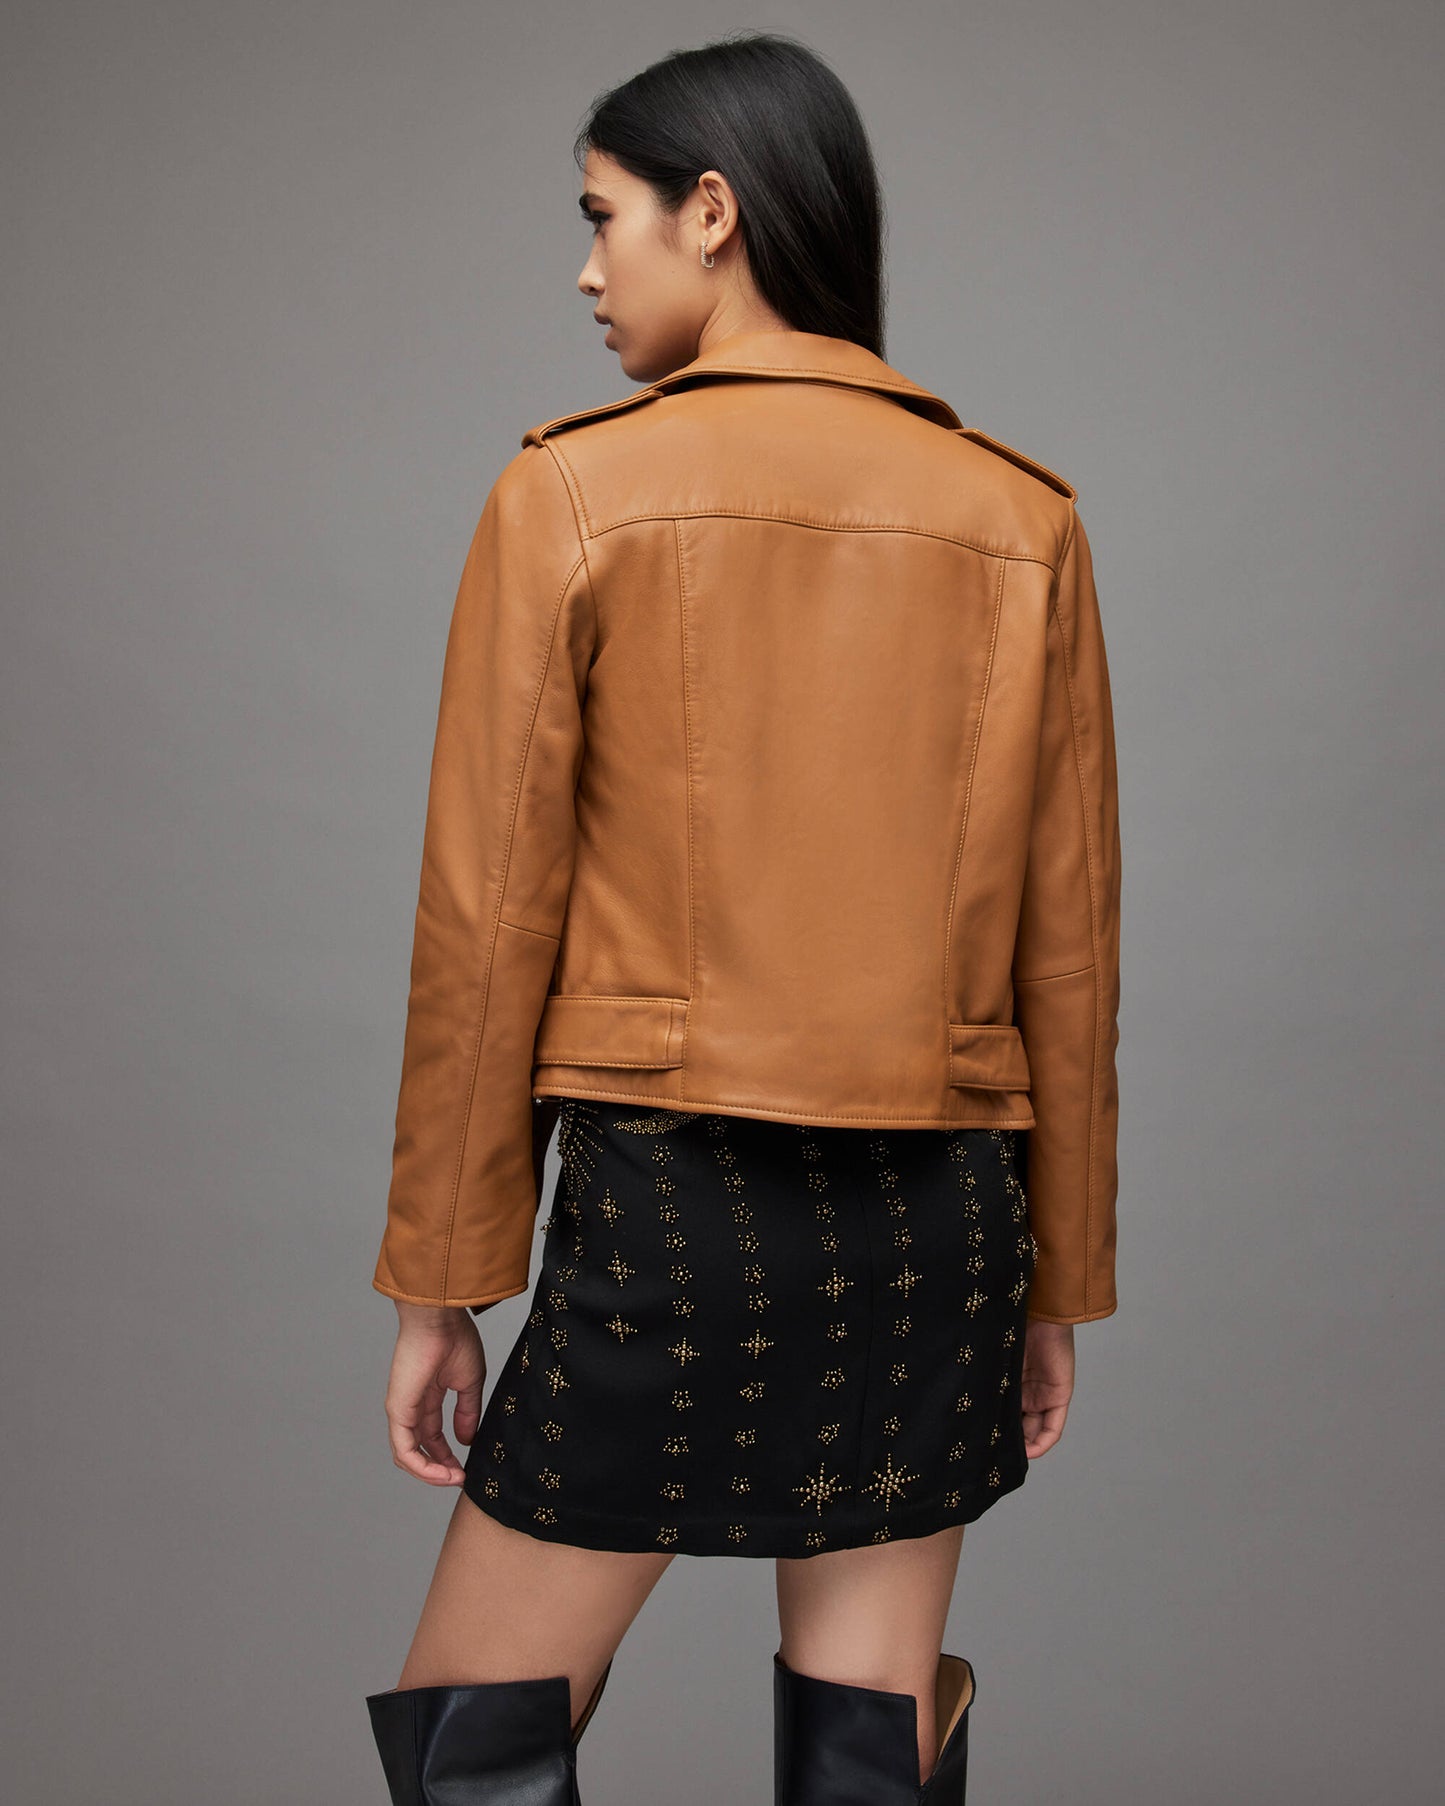 Women's Leather Biker Jacket In Tan Brown